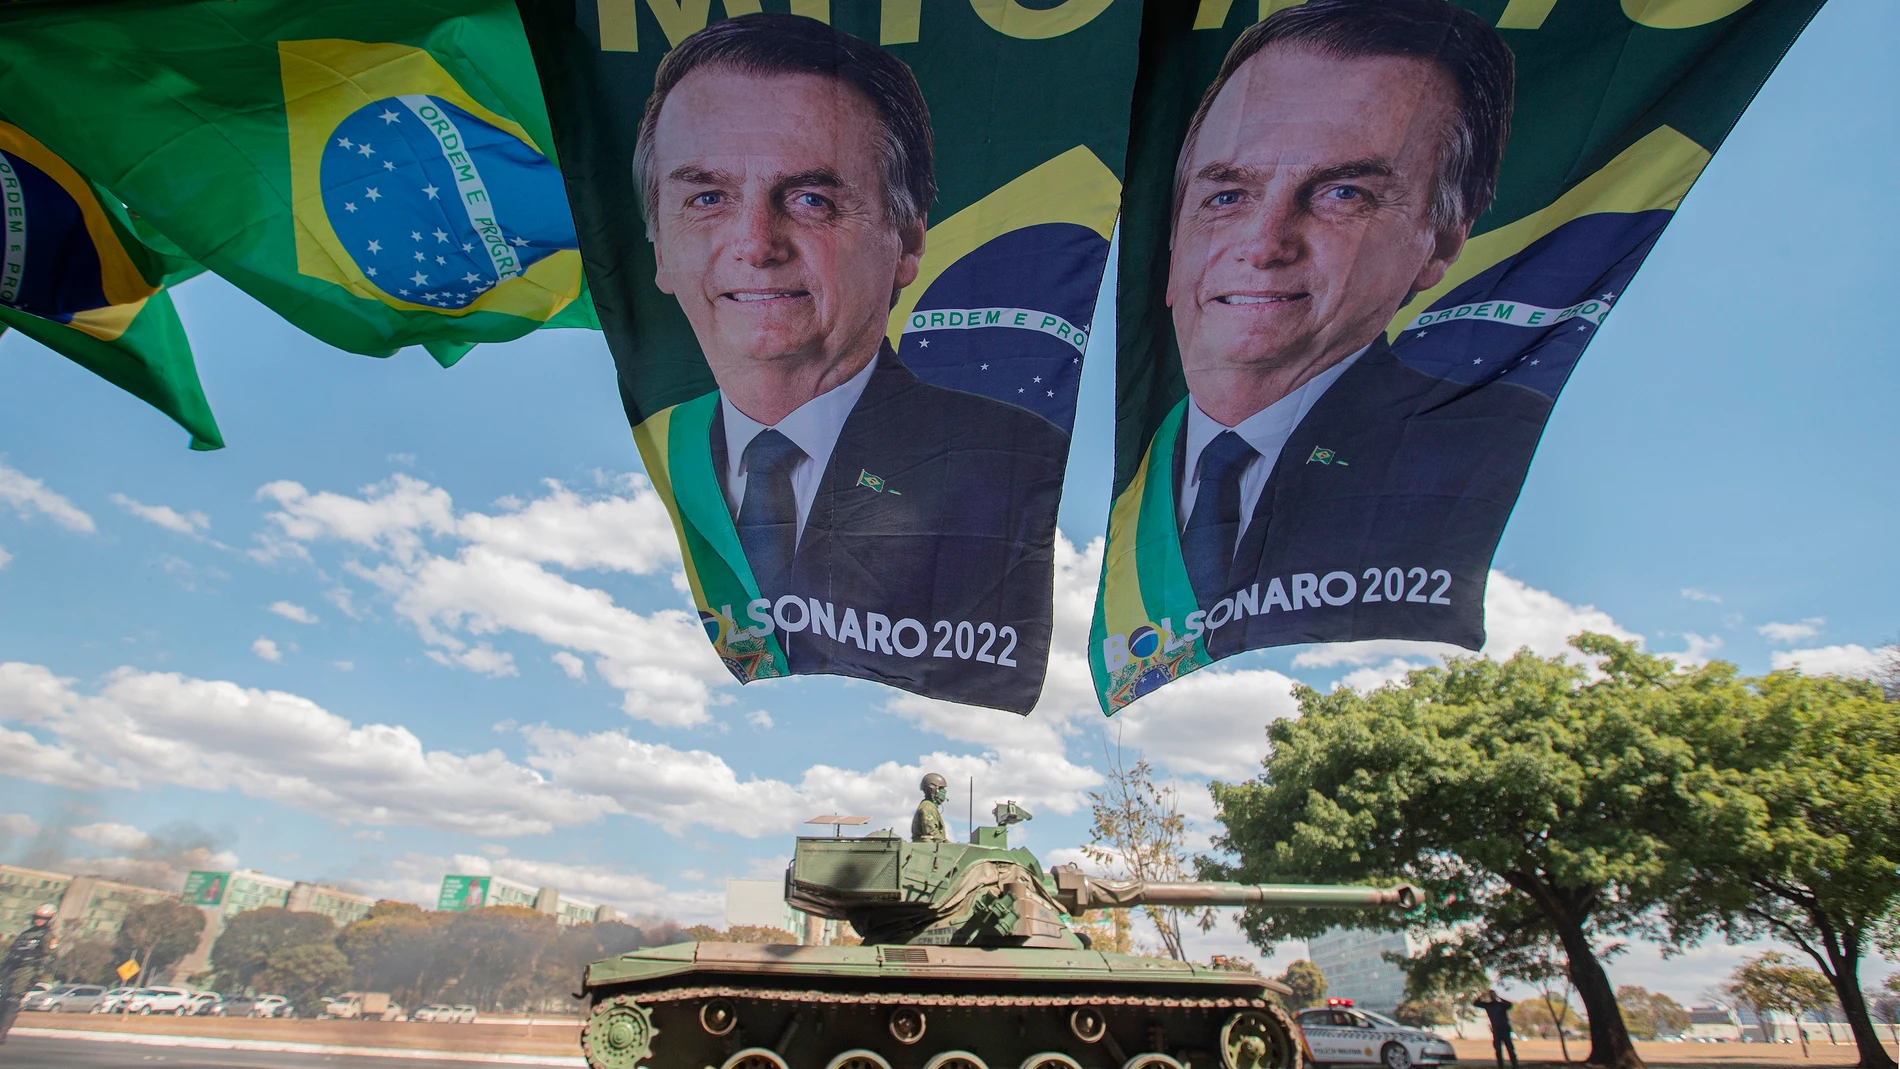 BRA121. BRASÍLIA (BRASIL), 10/08/2021.- Fotografía de un tanque de la Armada mientras sale de la Esplanada dos Ministerios tras participar en un desfile militar hoy, en Brasilia (Brasilia). El presidente de Brasil, Jair Bolsonaro, recibió este martes un inusual desfile militar en Brasilia, un despliegue que fue visto por la oposición como un intento de líder de la ultraderecha brasileña por intimidar al Congreso durante una votación clave para el Gobierno. EFE/ Joédson Alves